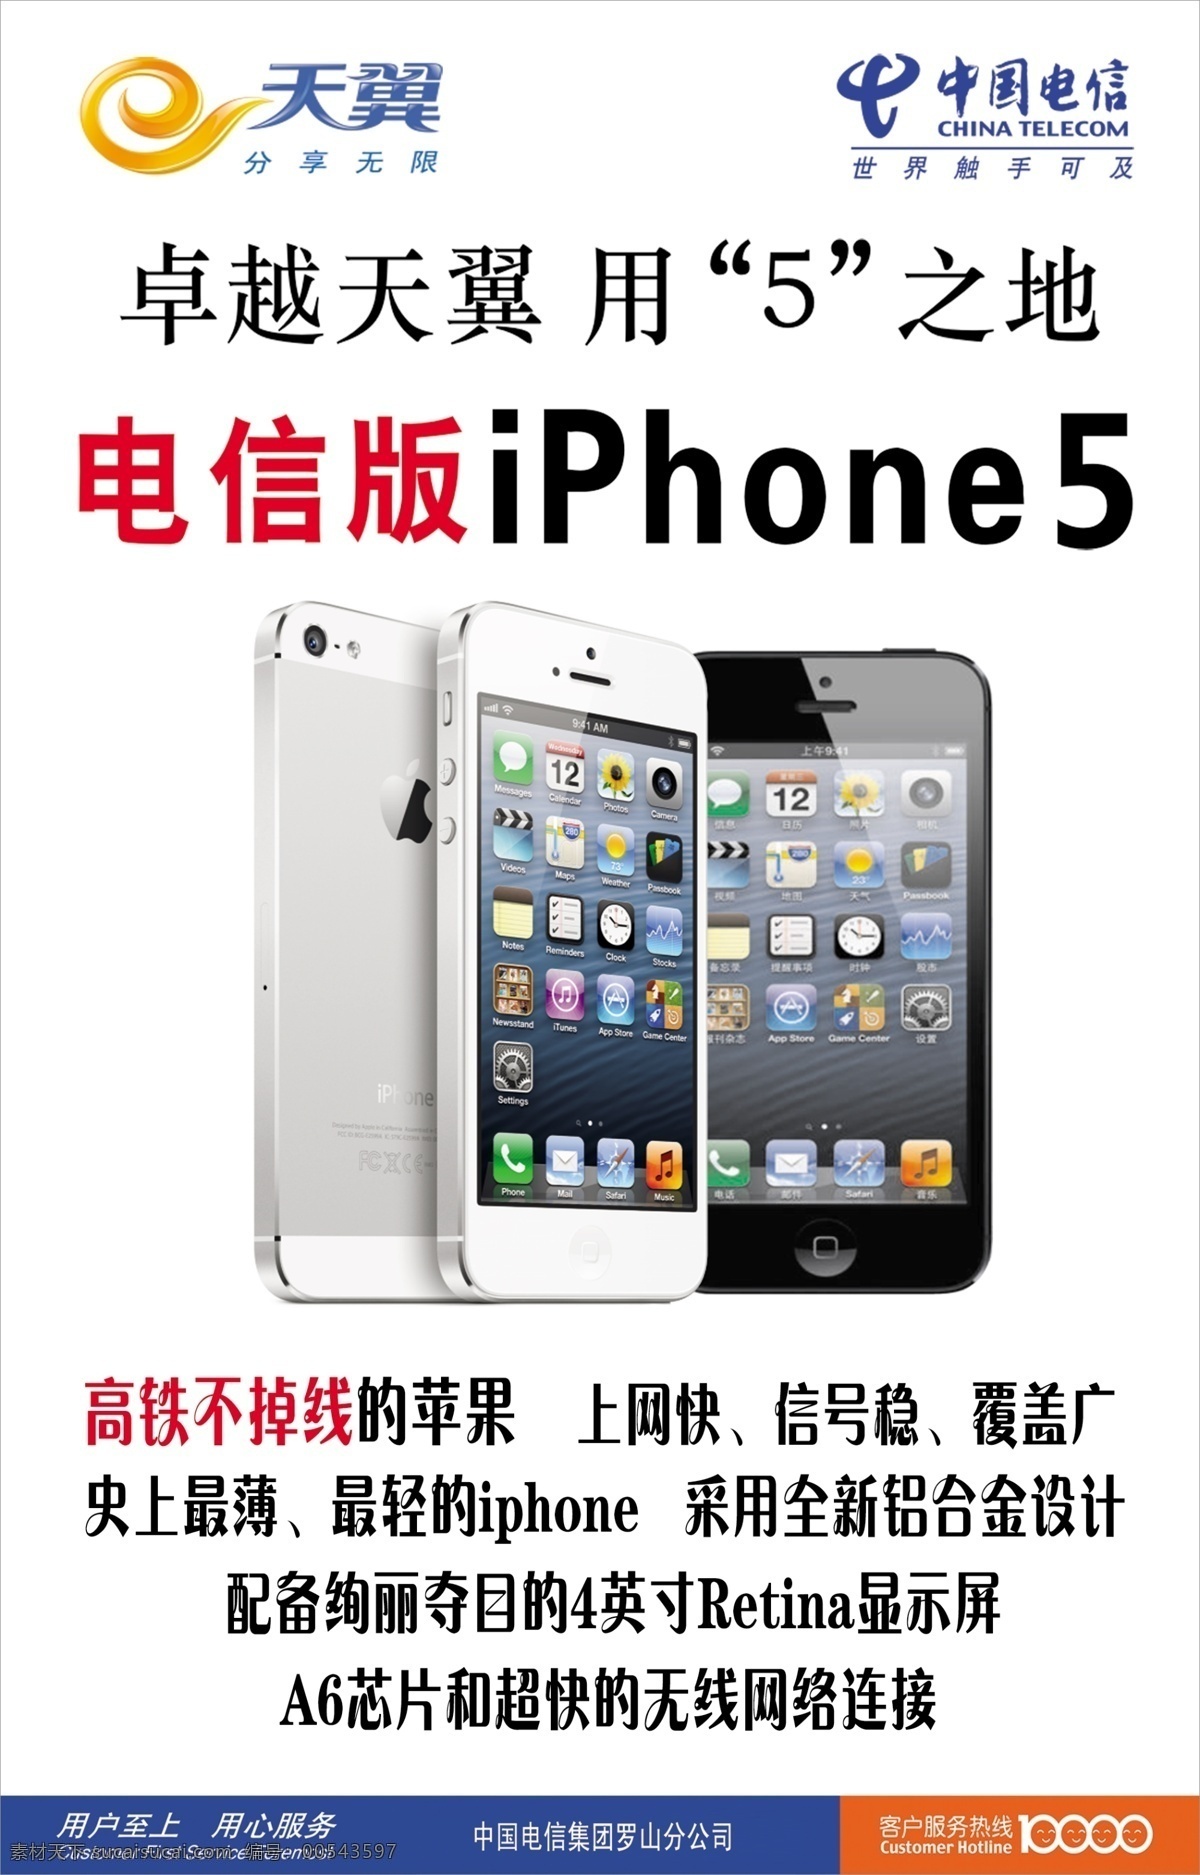 iphone 广告设计模板 苹果5 天翼 源文件 中国电信 电信版 模板下载 卓越天翼 高铁不掉线 其他海报设计